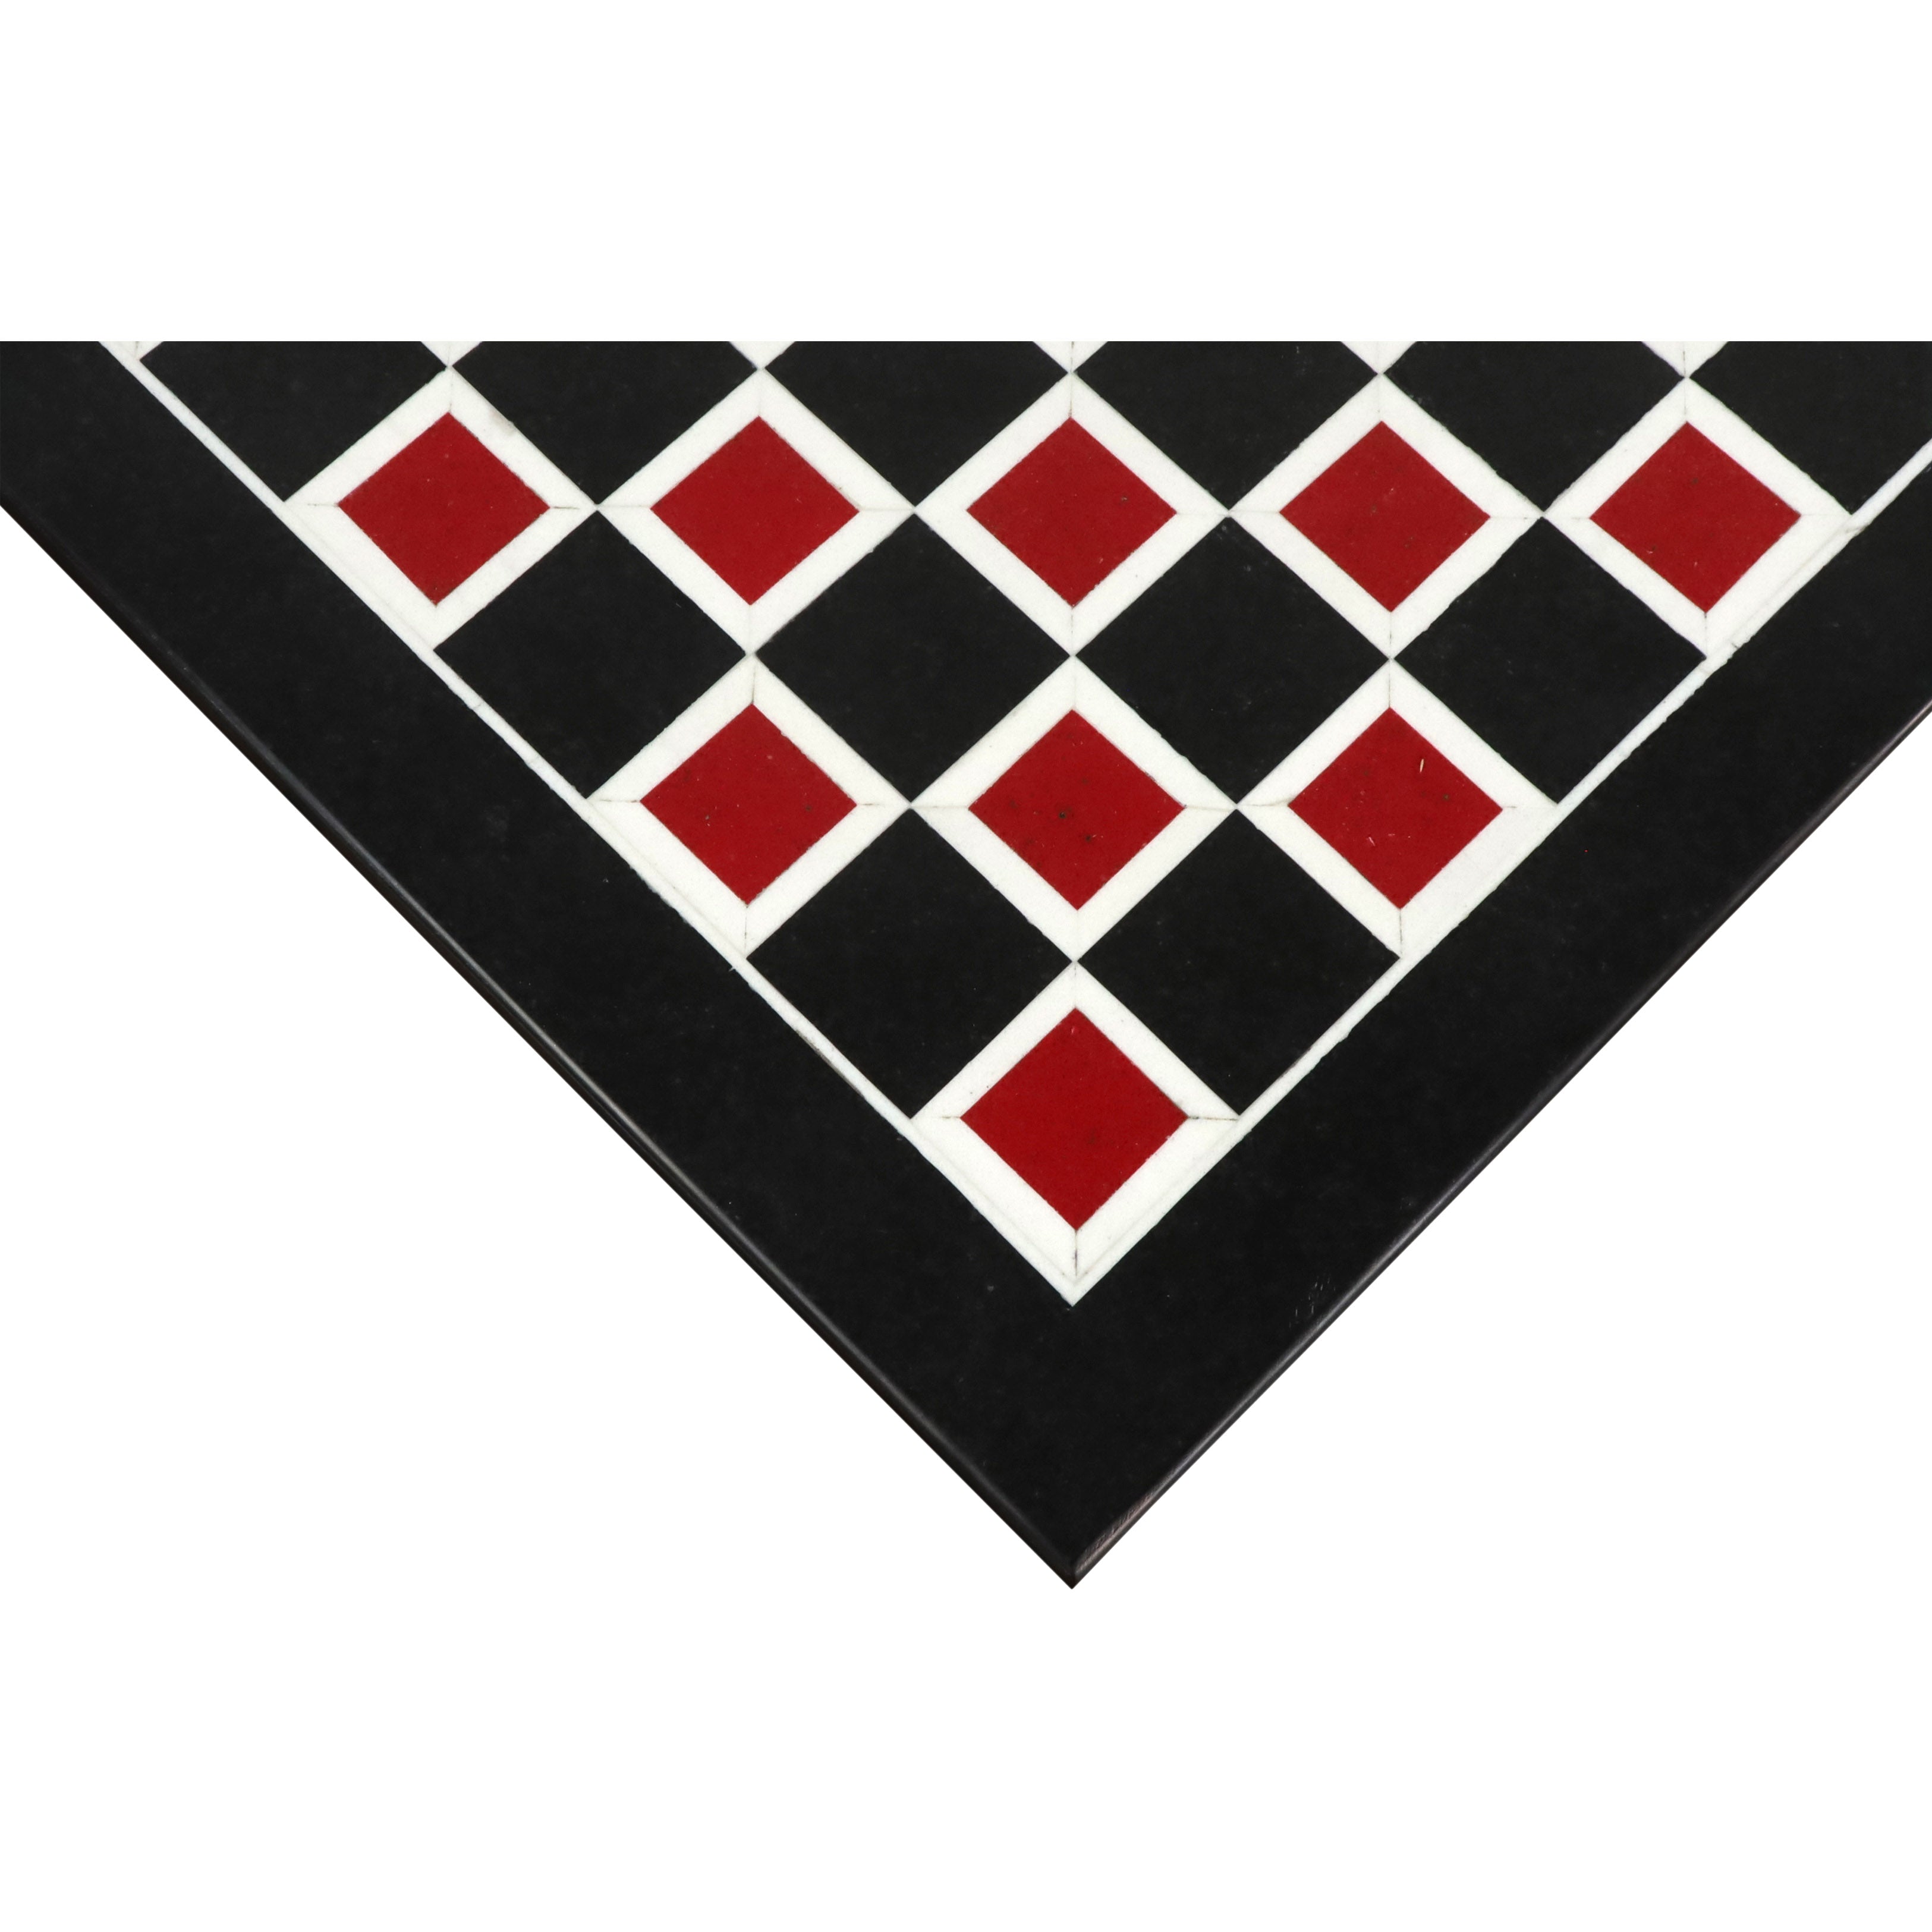 18'' Marble Stone Luxury Chess Board - Black & Red Semi-Precious Stones